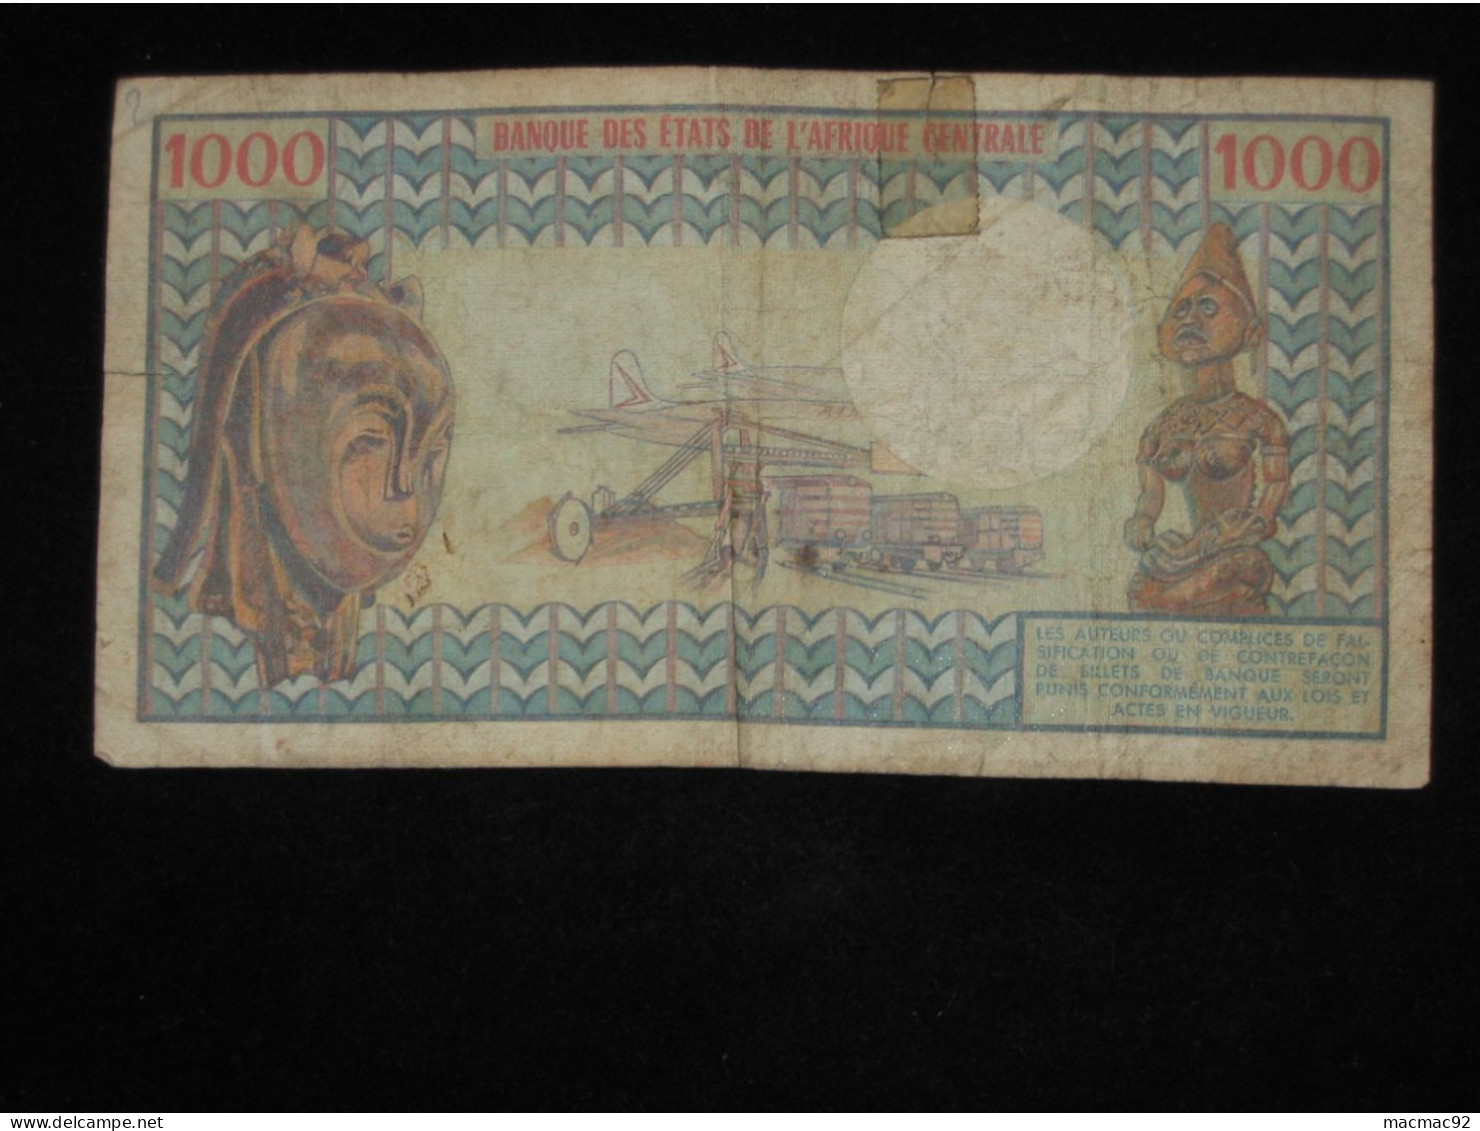 GABON - 1000 Francs - 1974-1978  République Gabonaise  **** EN ACHAT IMMEDIAT **** - Gabun